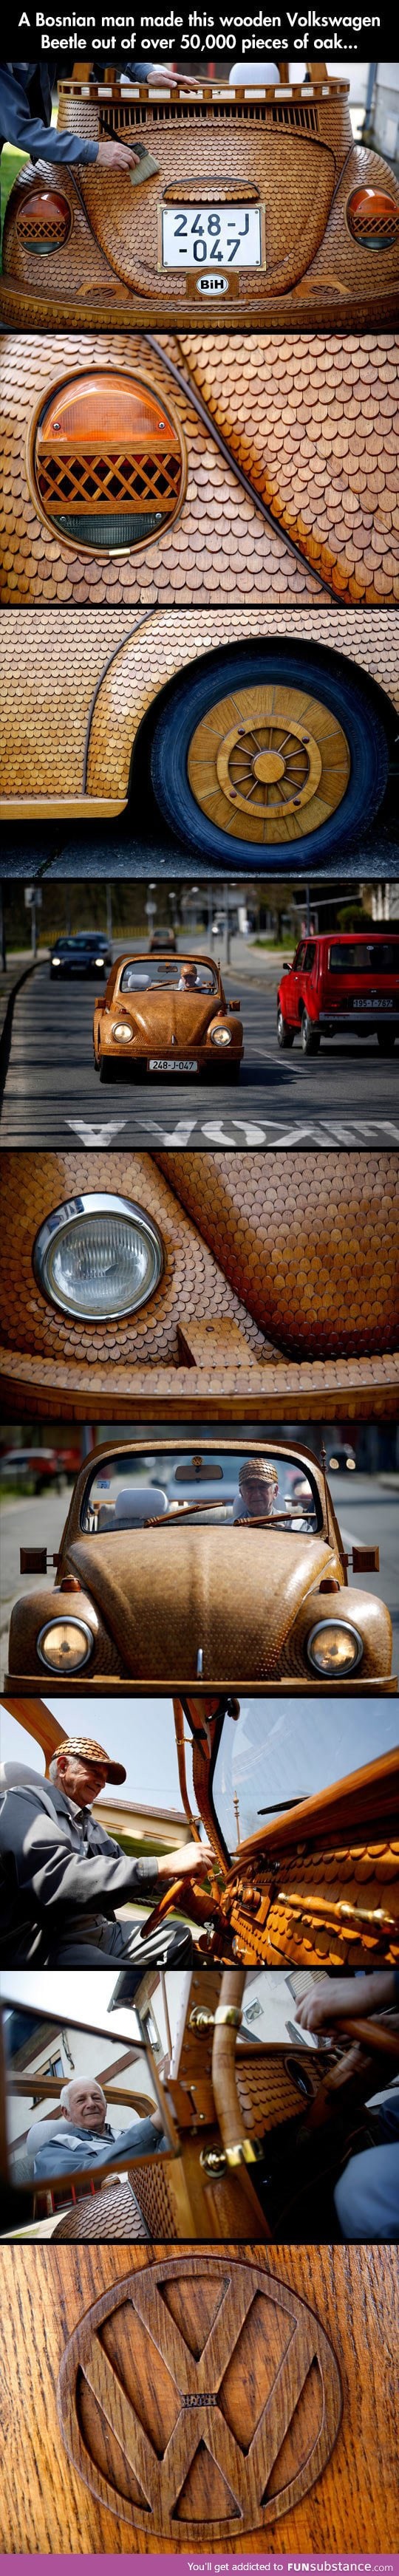 A wooden Volkswagen beetle